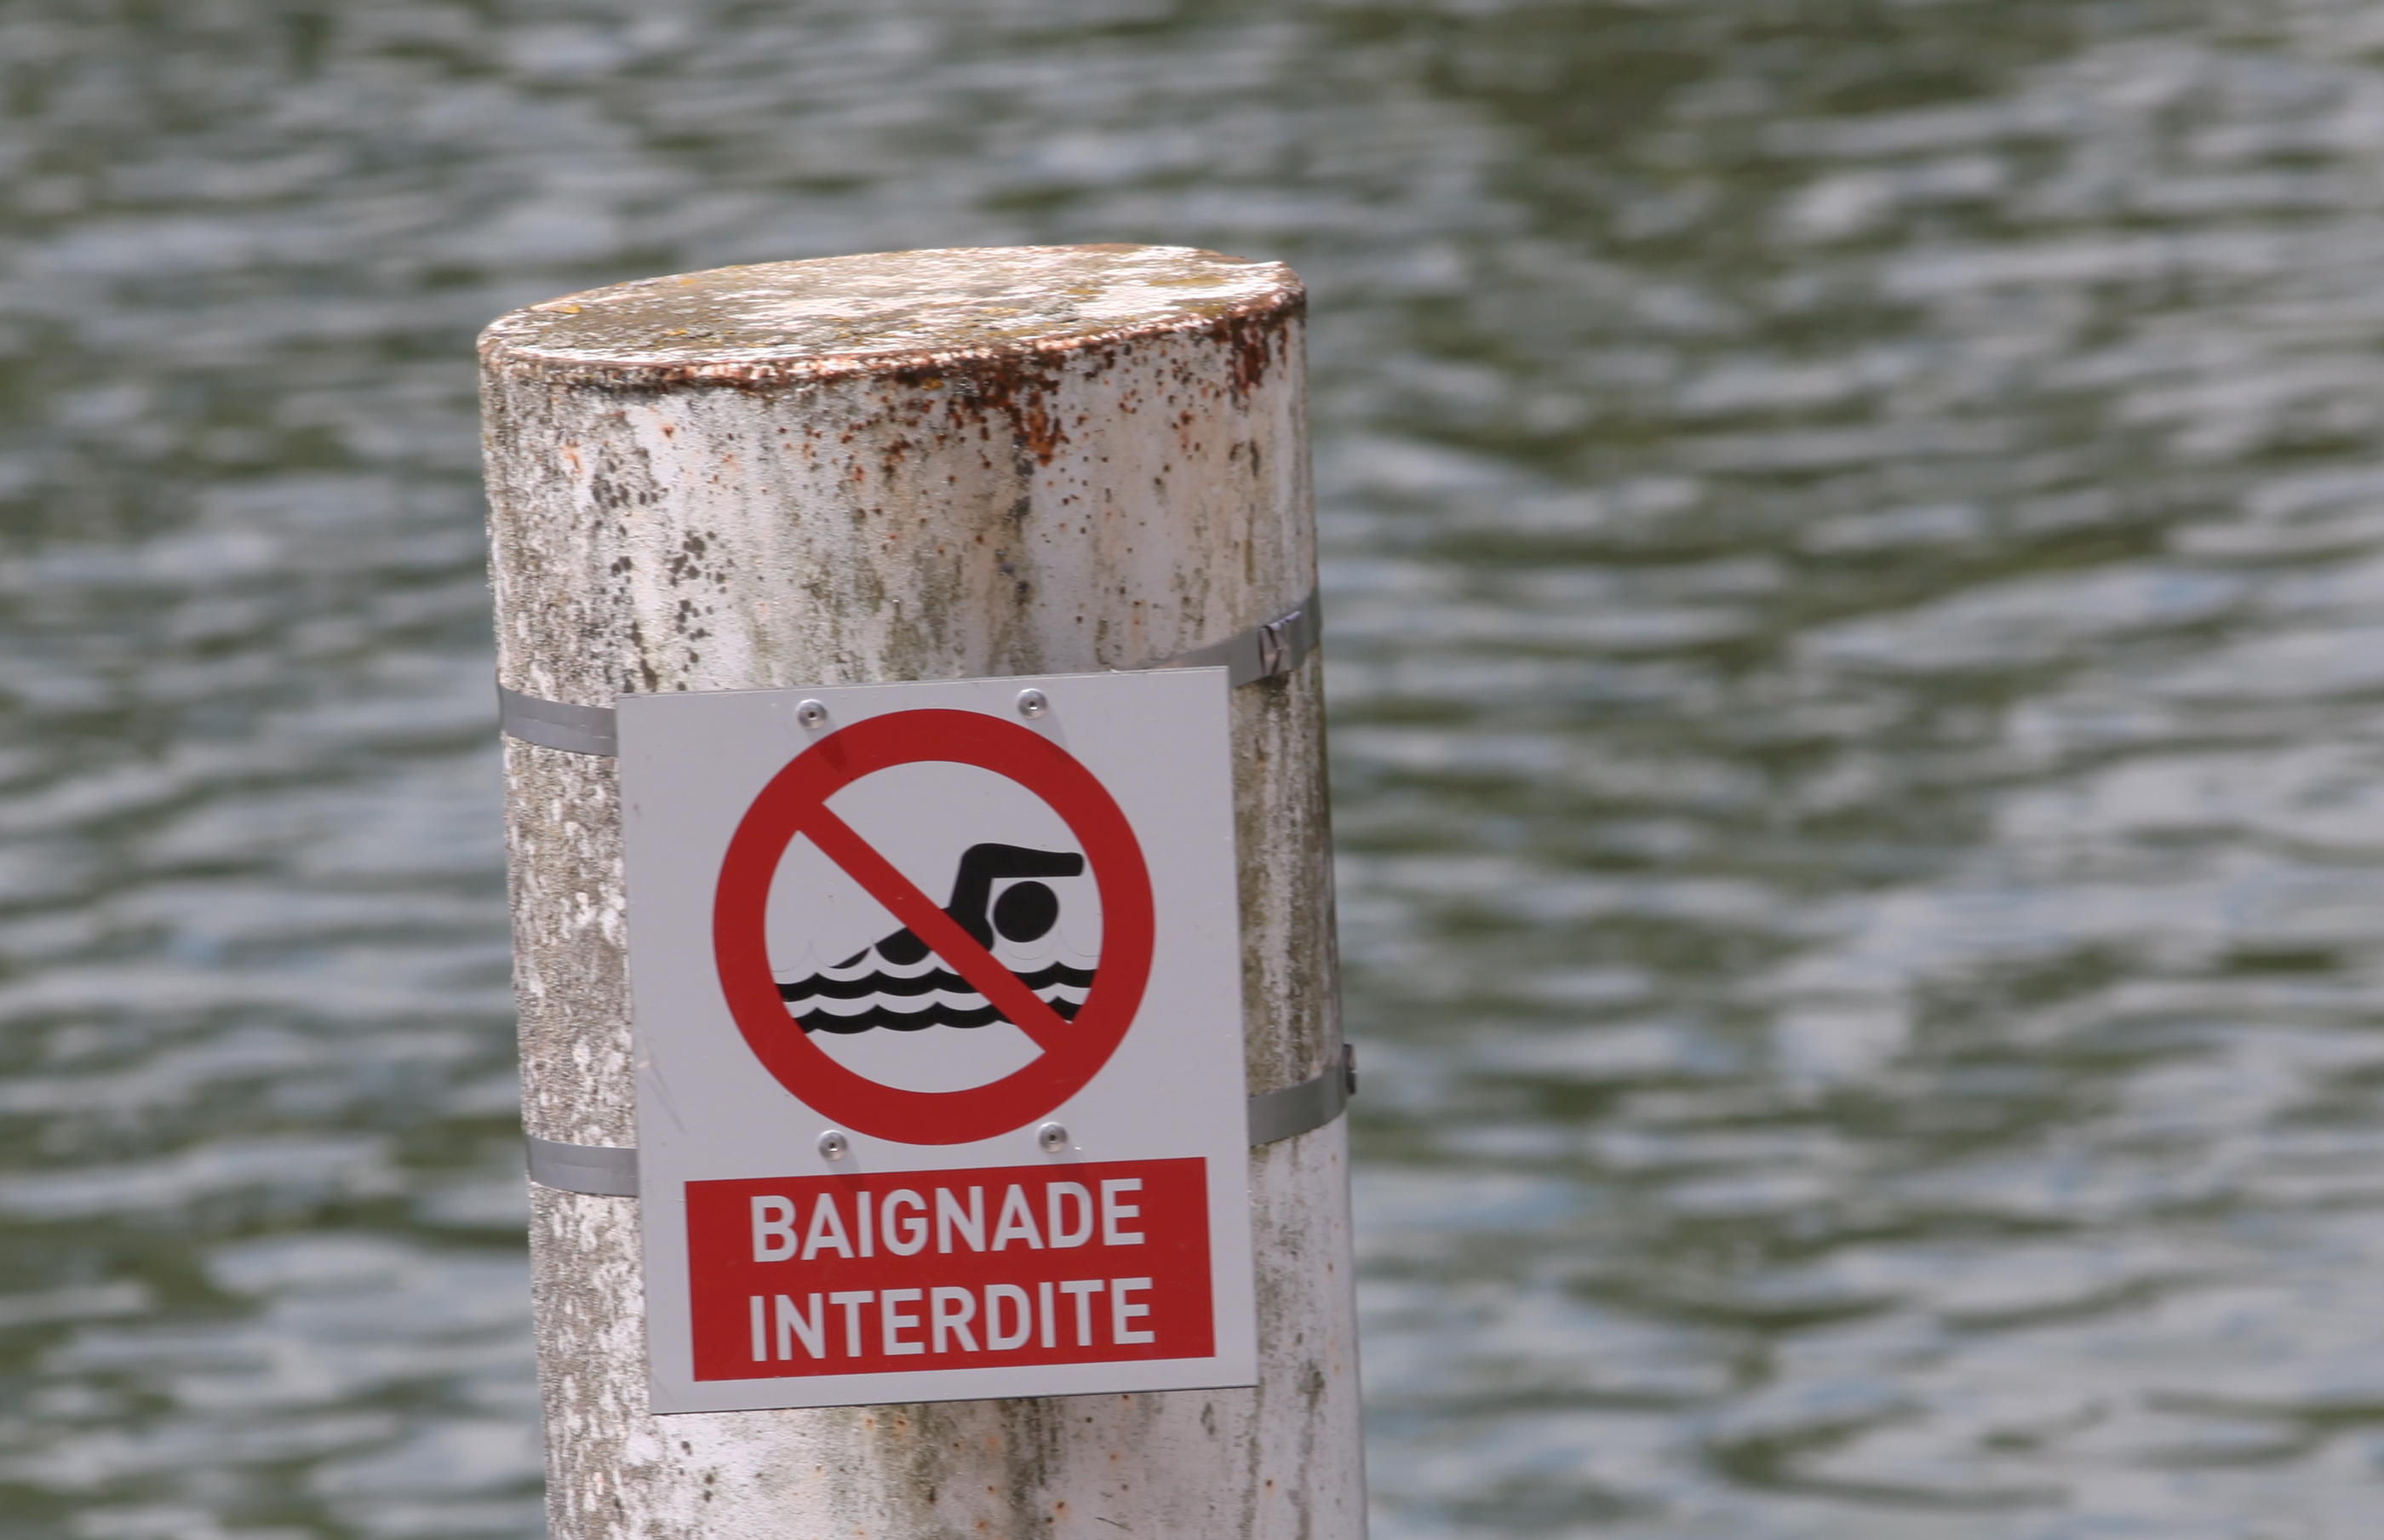 La baignade sera interdite au large de La Turballe, a annoncé la préfecture de Loire-Atlantique. LP/Olivier Boitet